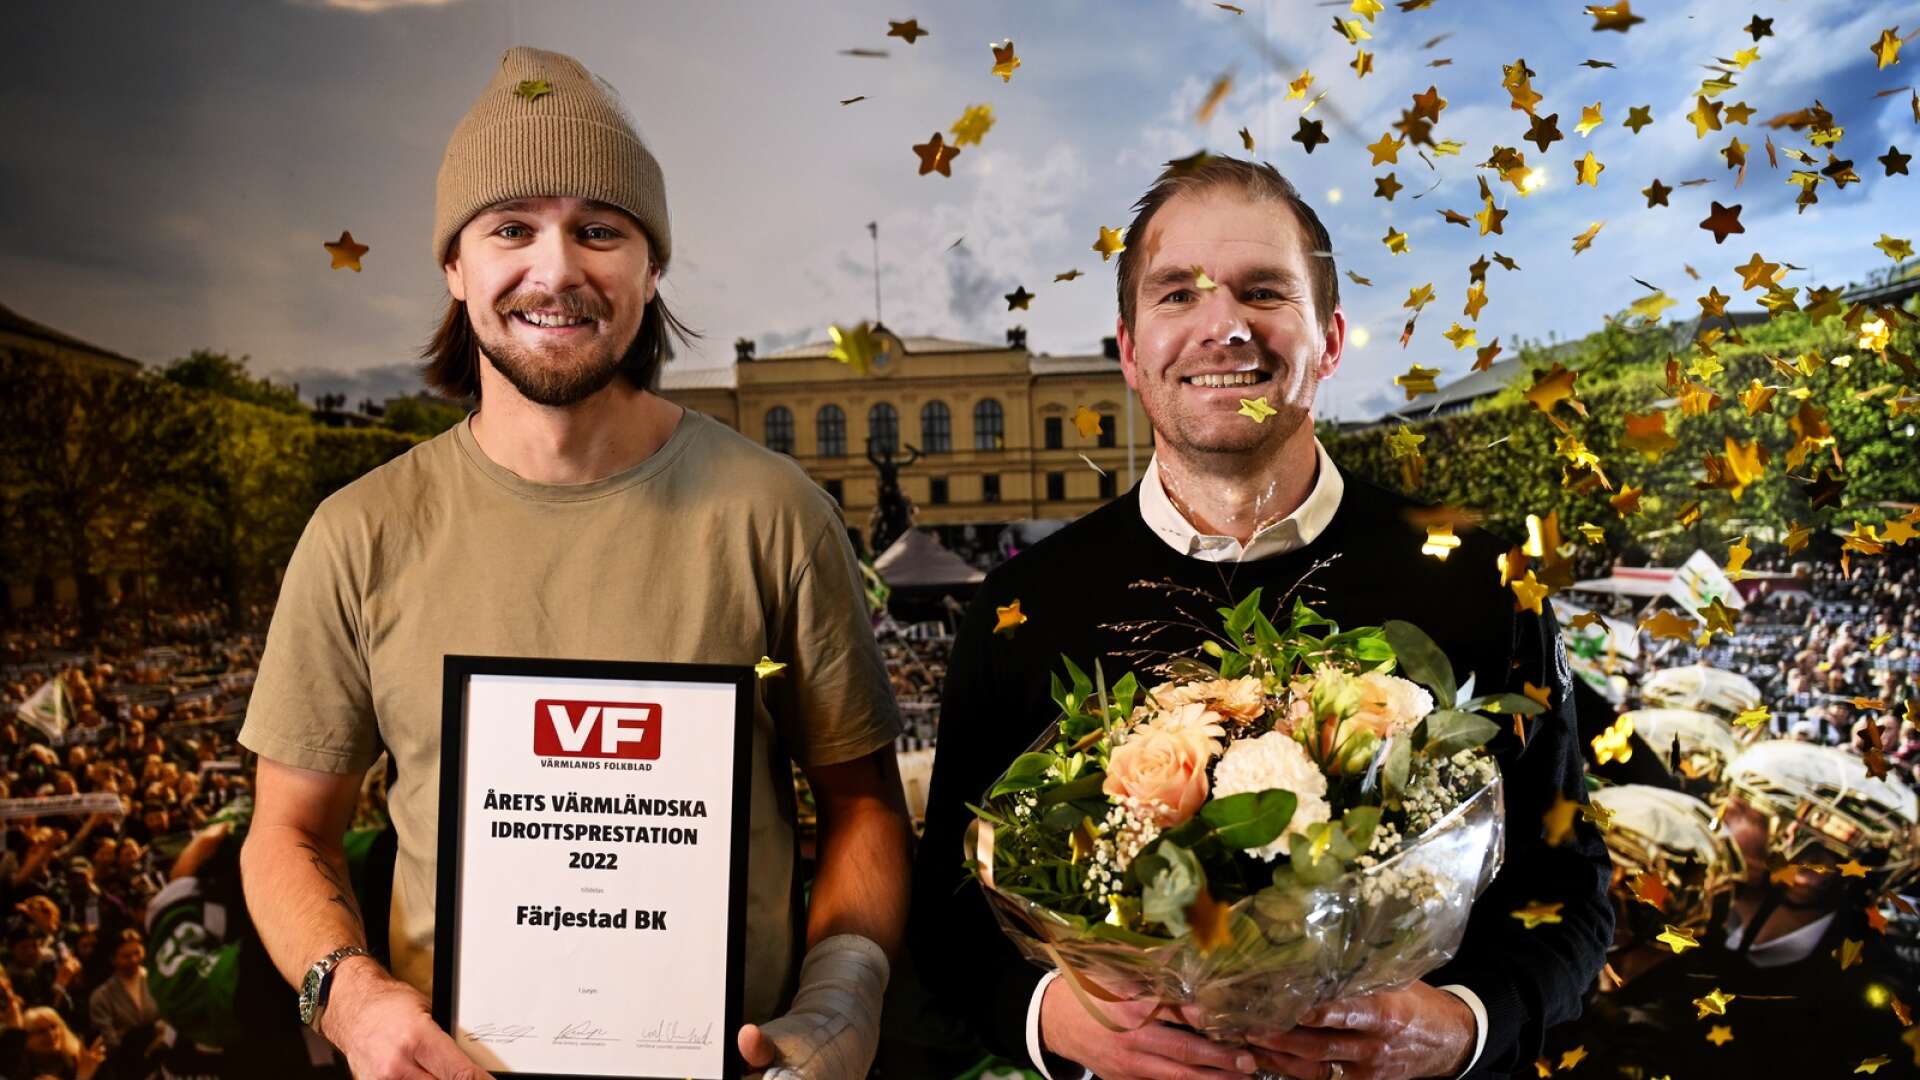 Sagan om när Färjestad BK blev svenska mästare – och stod för ”Årets värmländska idrottsprestation”